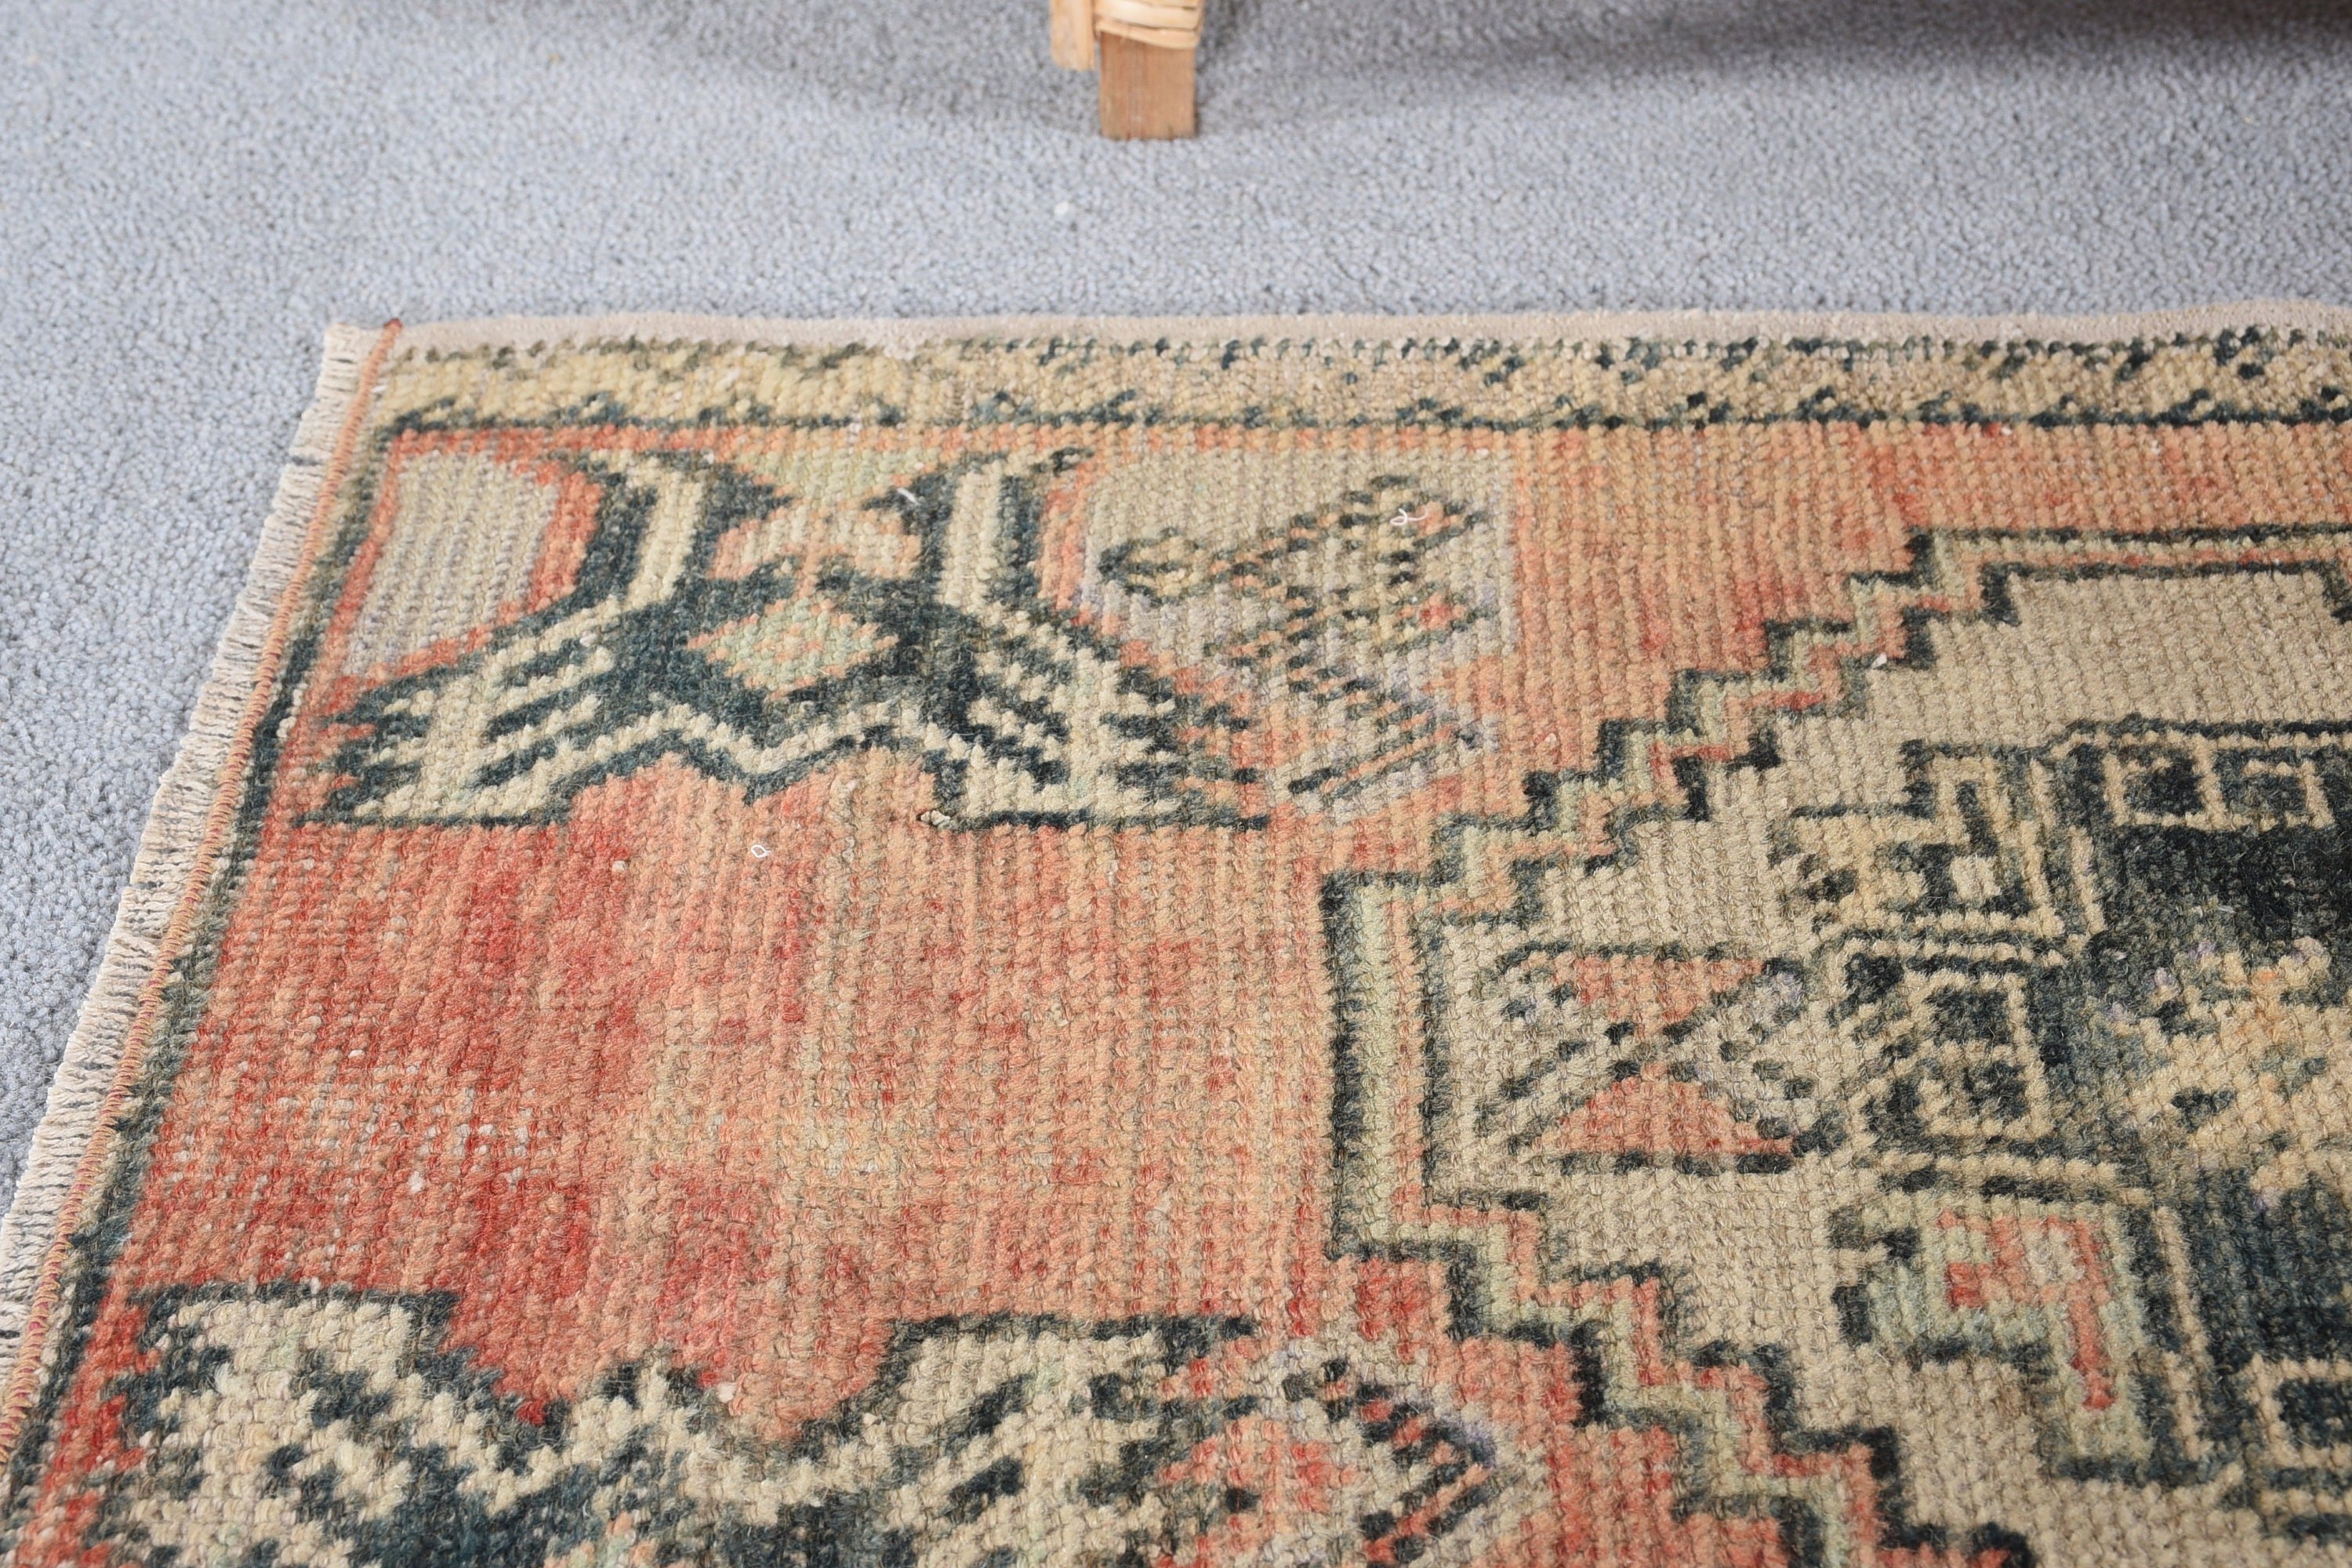 Turkish Rug, Vintage Rugs, Floor Rug, Rugs for Bedroom, Entry Rug, Brown  1.6x2.6 ft Small Rugs, Nursery Rug, Wool Rugs